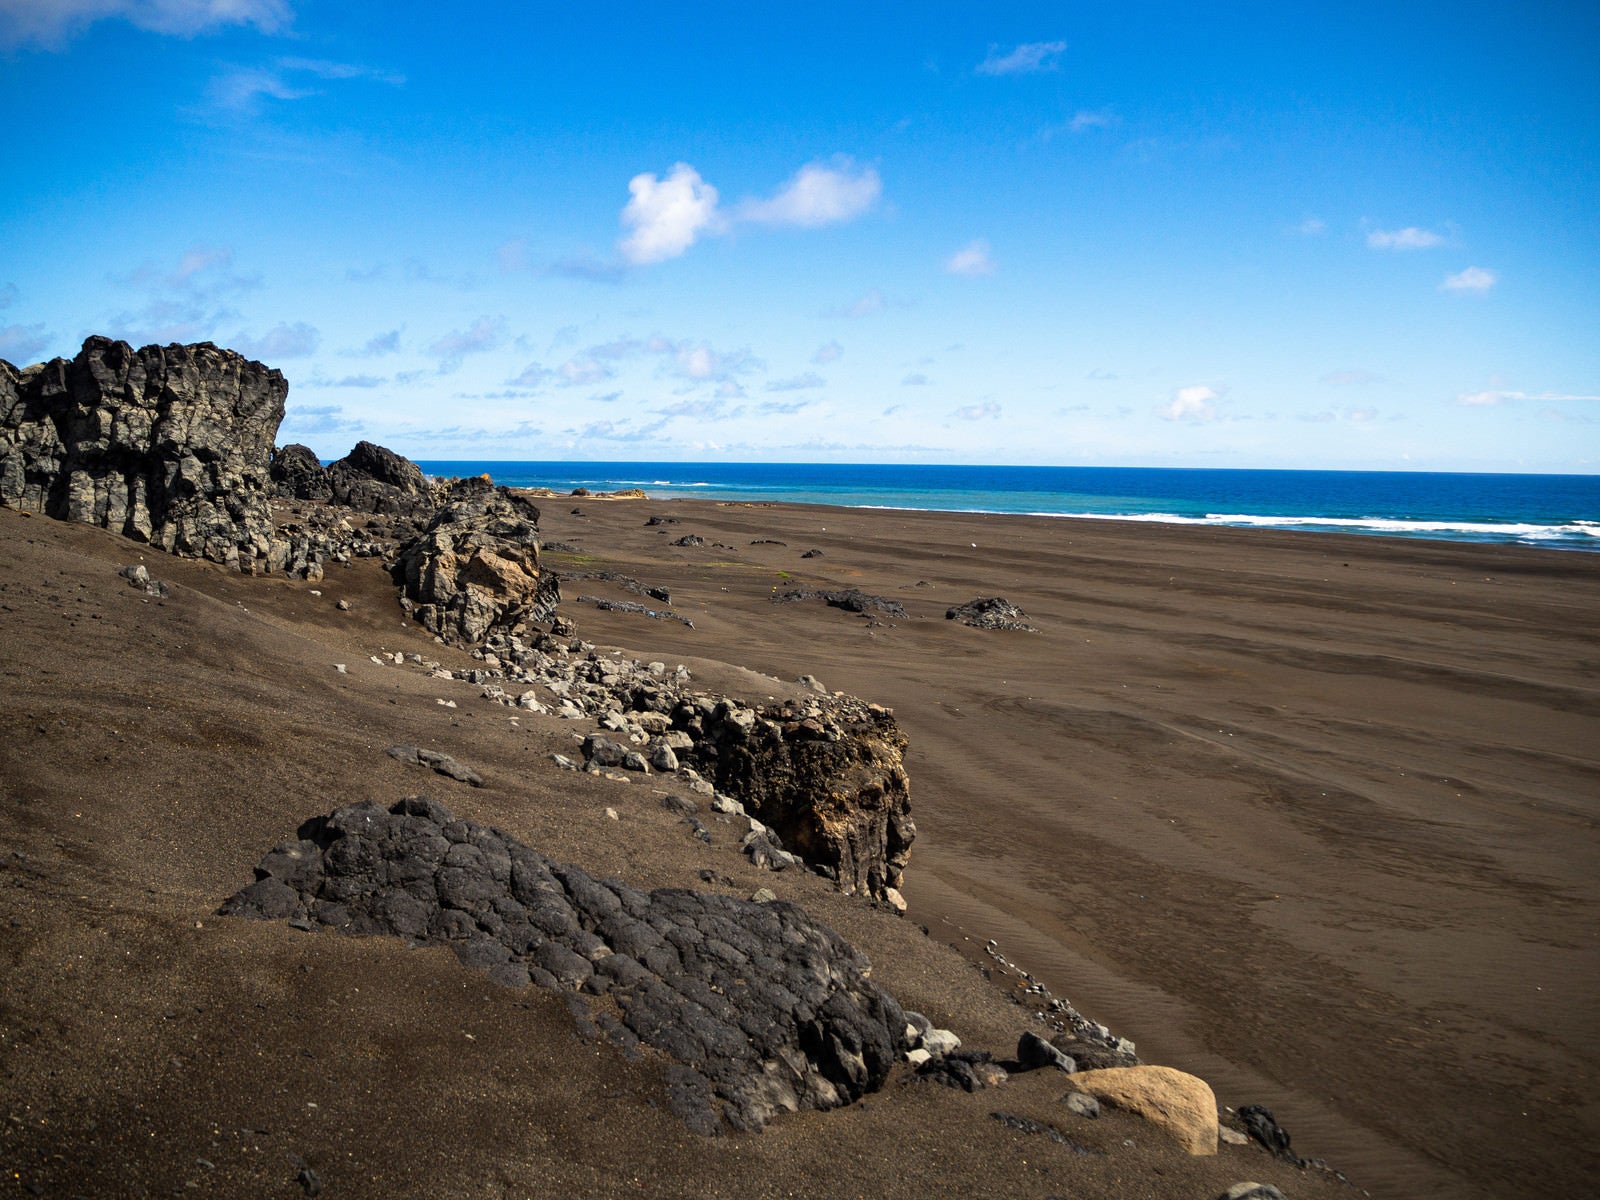 「硫黄島の東海岸のゴツゴツした岩と黒い砂浜」の写真